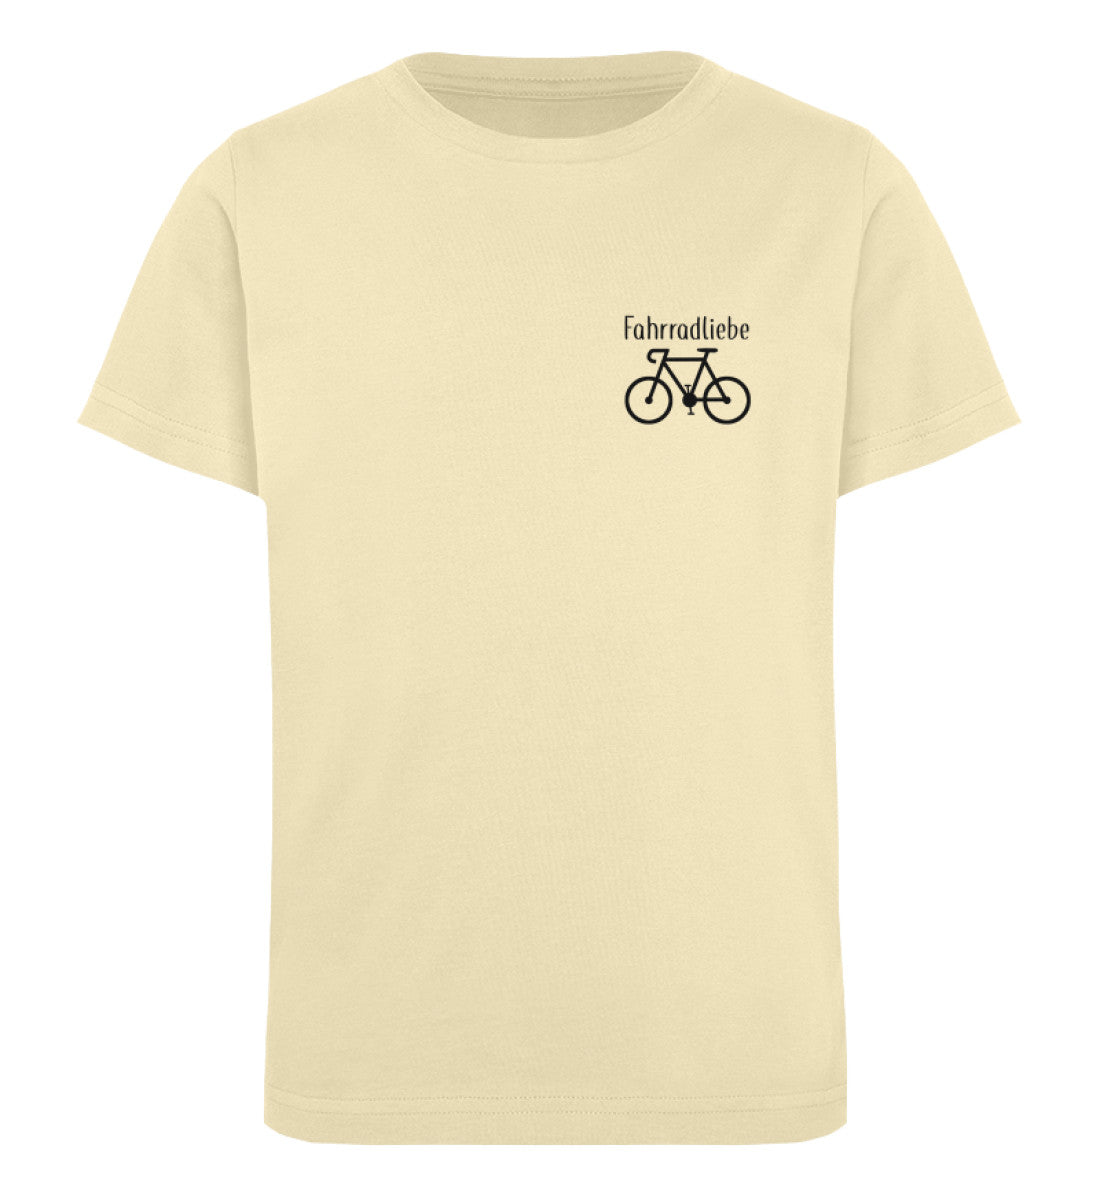 Fahrradliebe Kids Organic Shirt - talejo